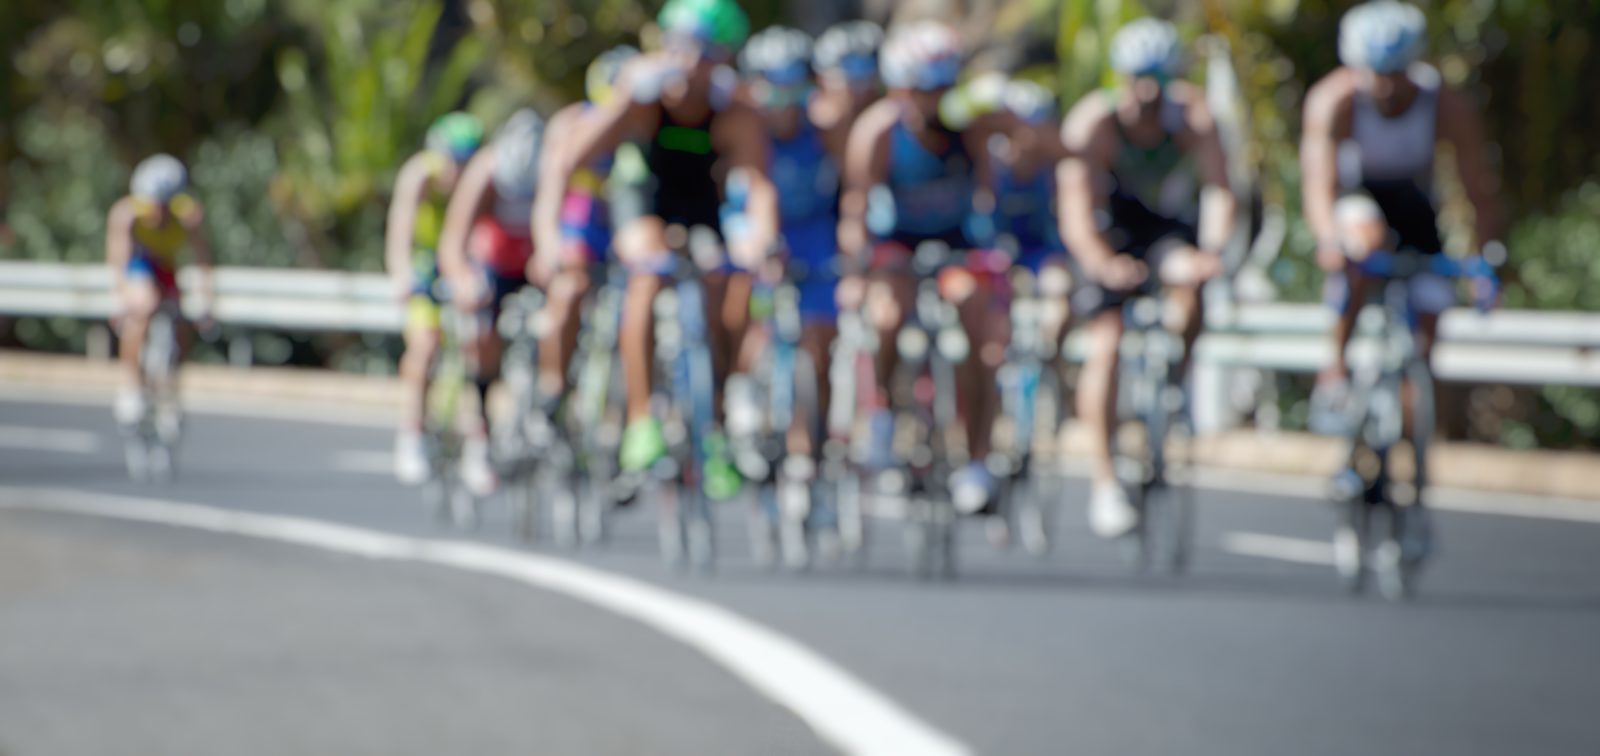 Wielrenwedstrijd 'Vuelta' komt in 2020 naar Nederland!